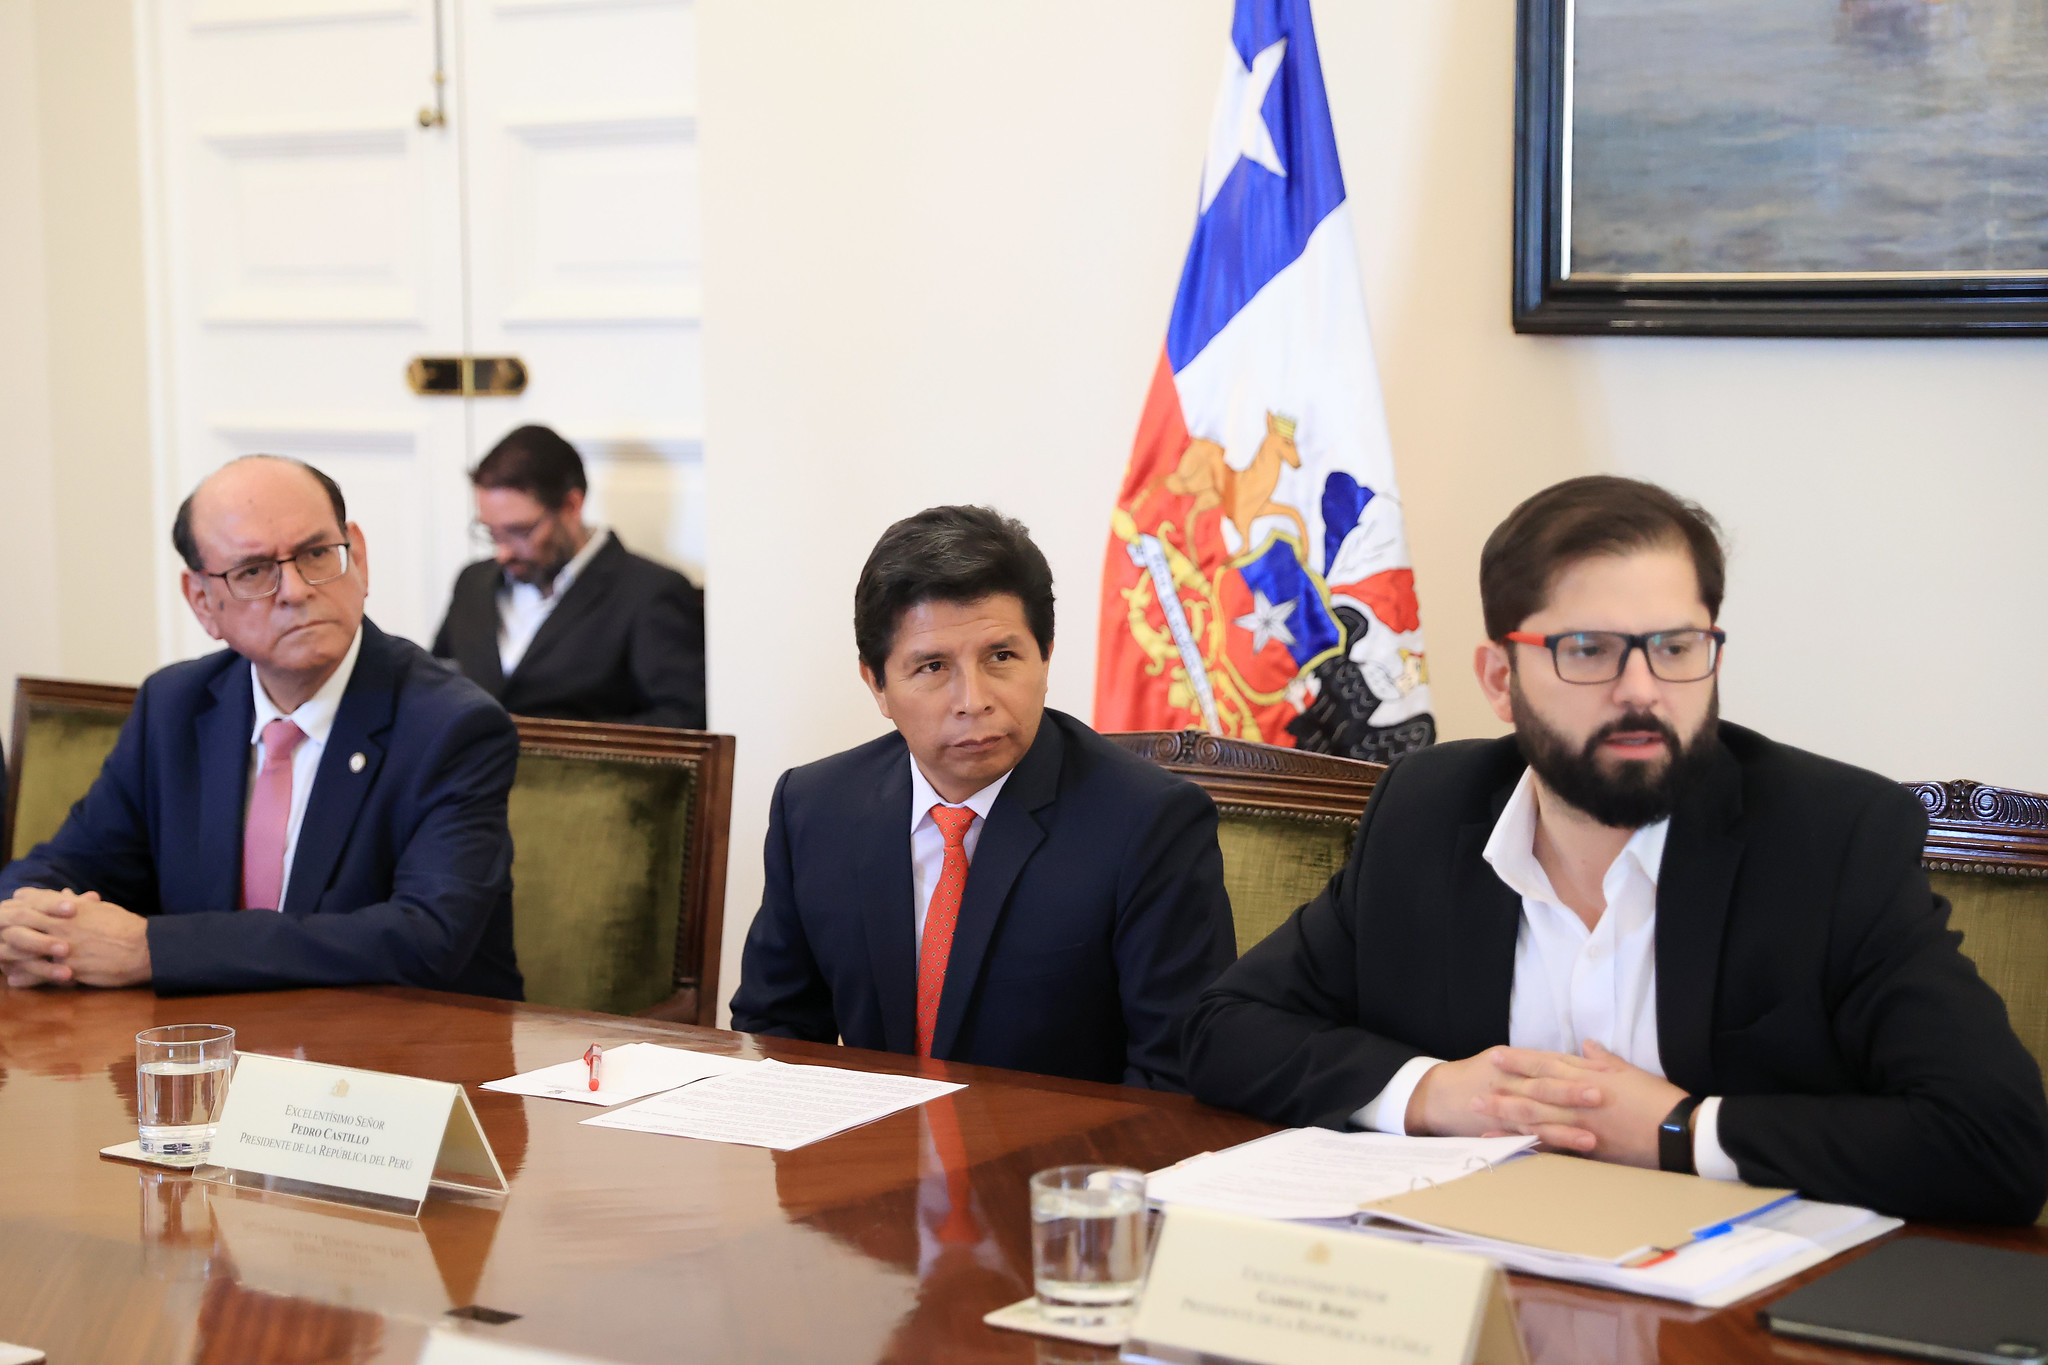 Presidentes Pedro Castillo y Gabriel Boric confirmaron Cumbre de la Alianza Pacífico en Perú